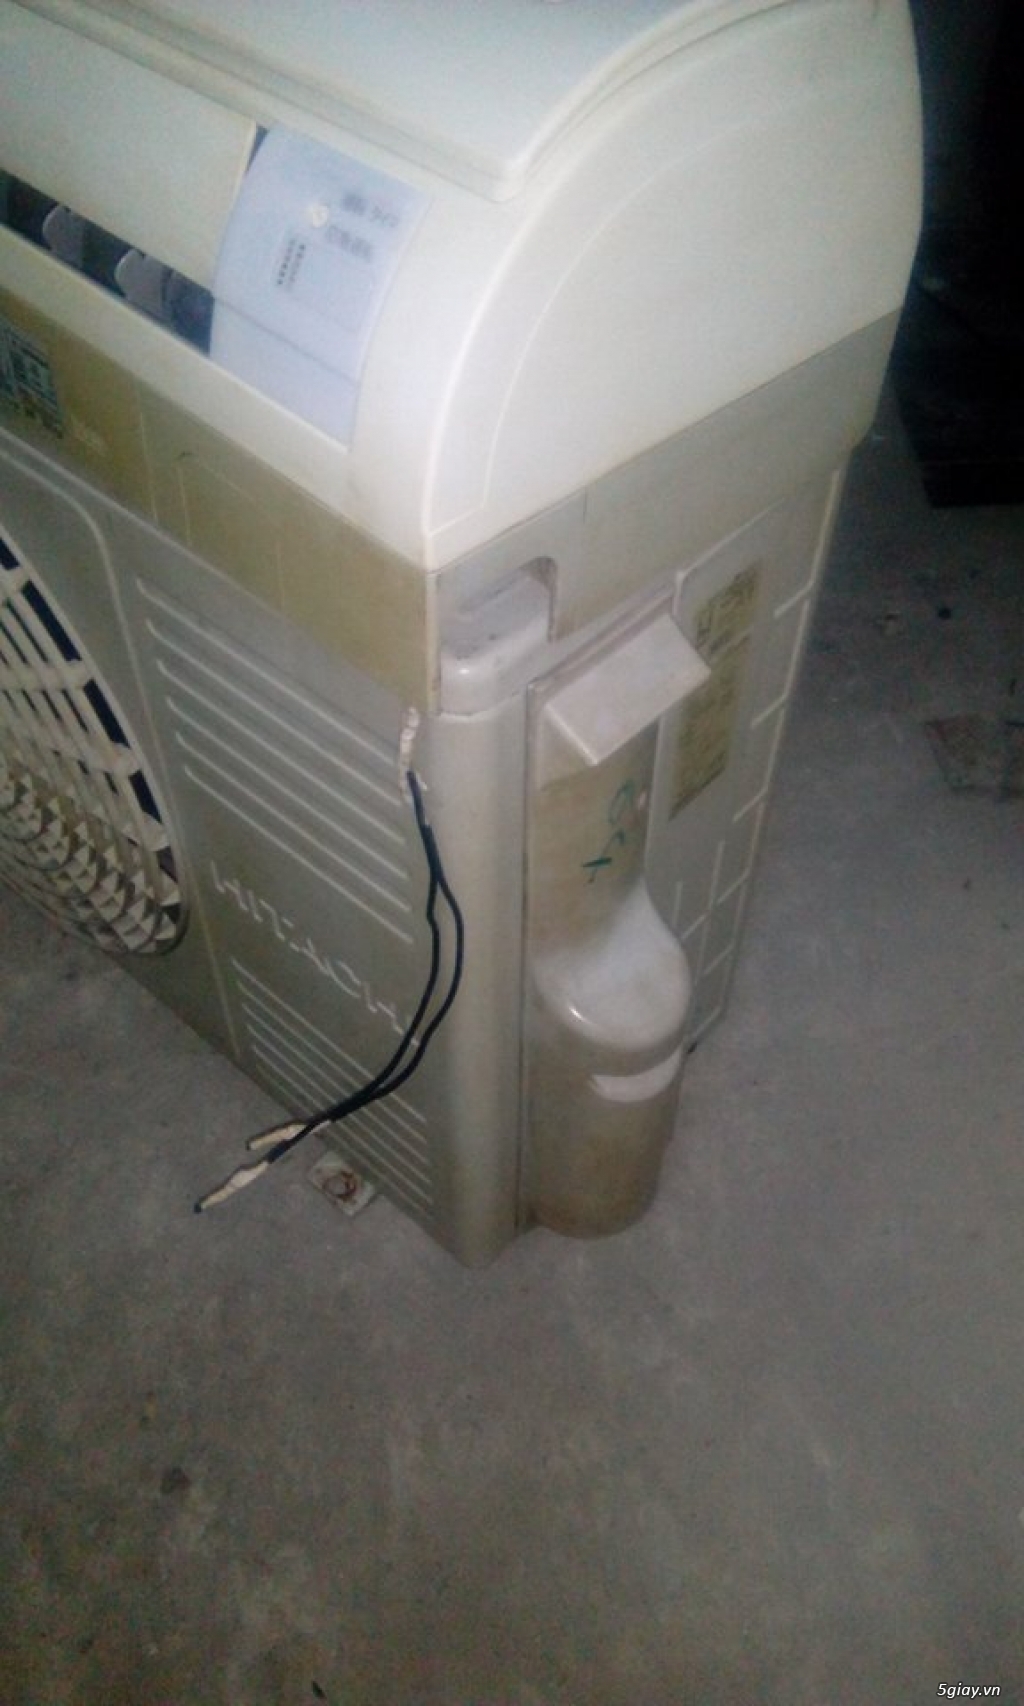 Thanh lý máy lạnh nội địa Hitachi, máy lạnh nhanh tiết kiệm điện, fix - 1